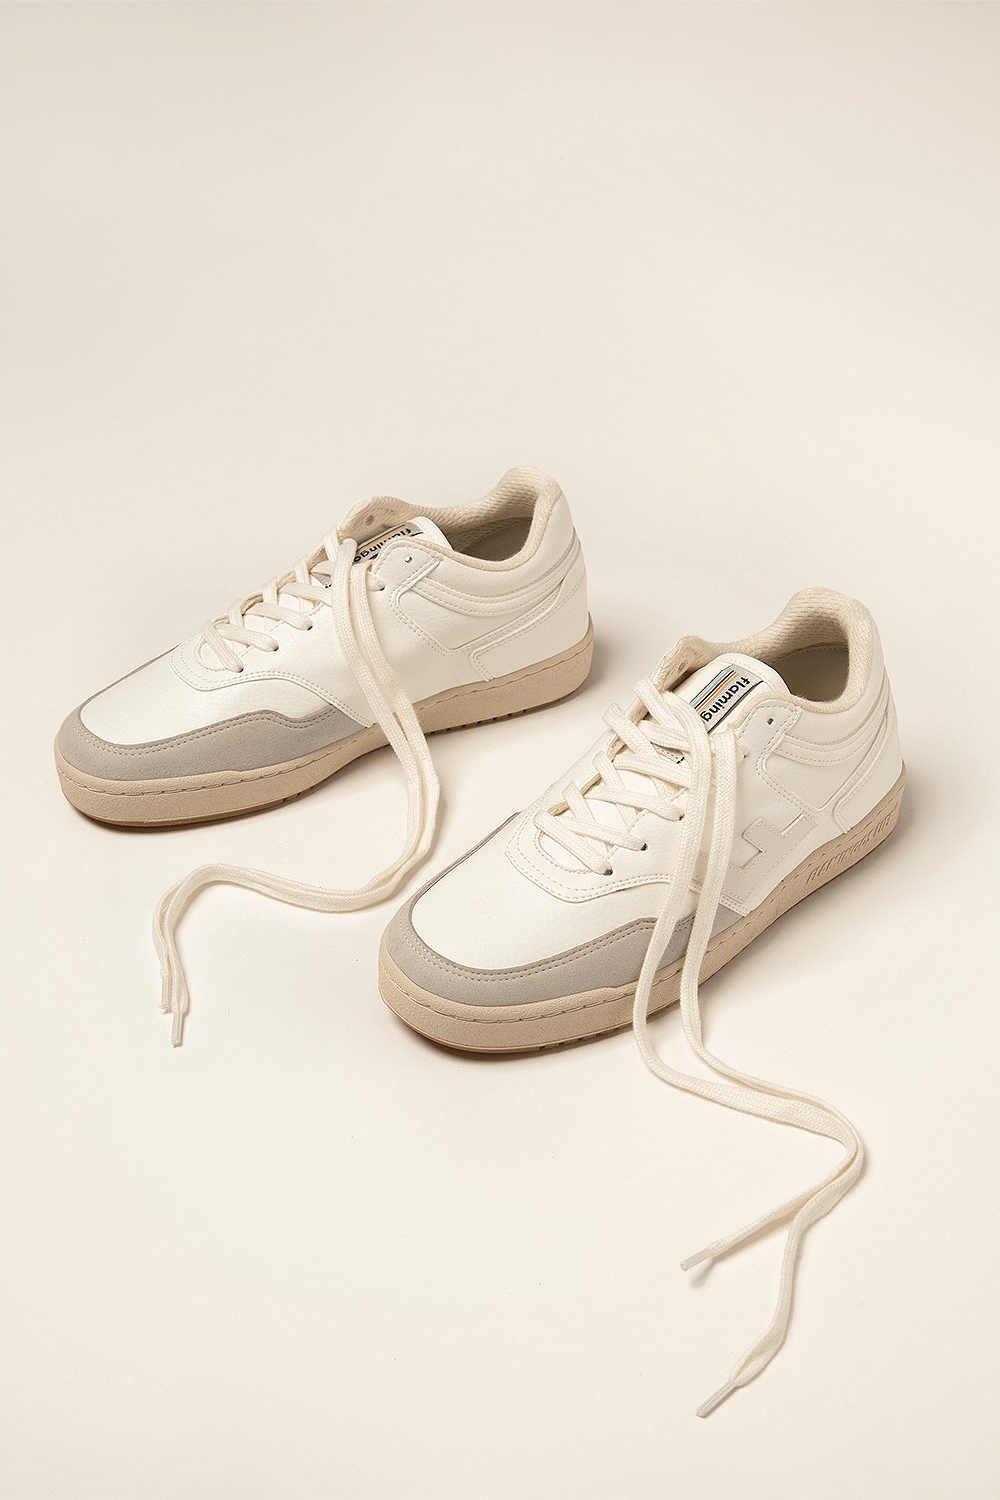 Sneaker Retro 90s All White Bicolor